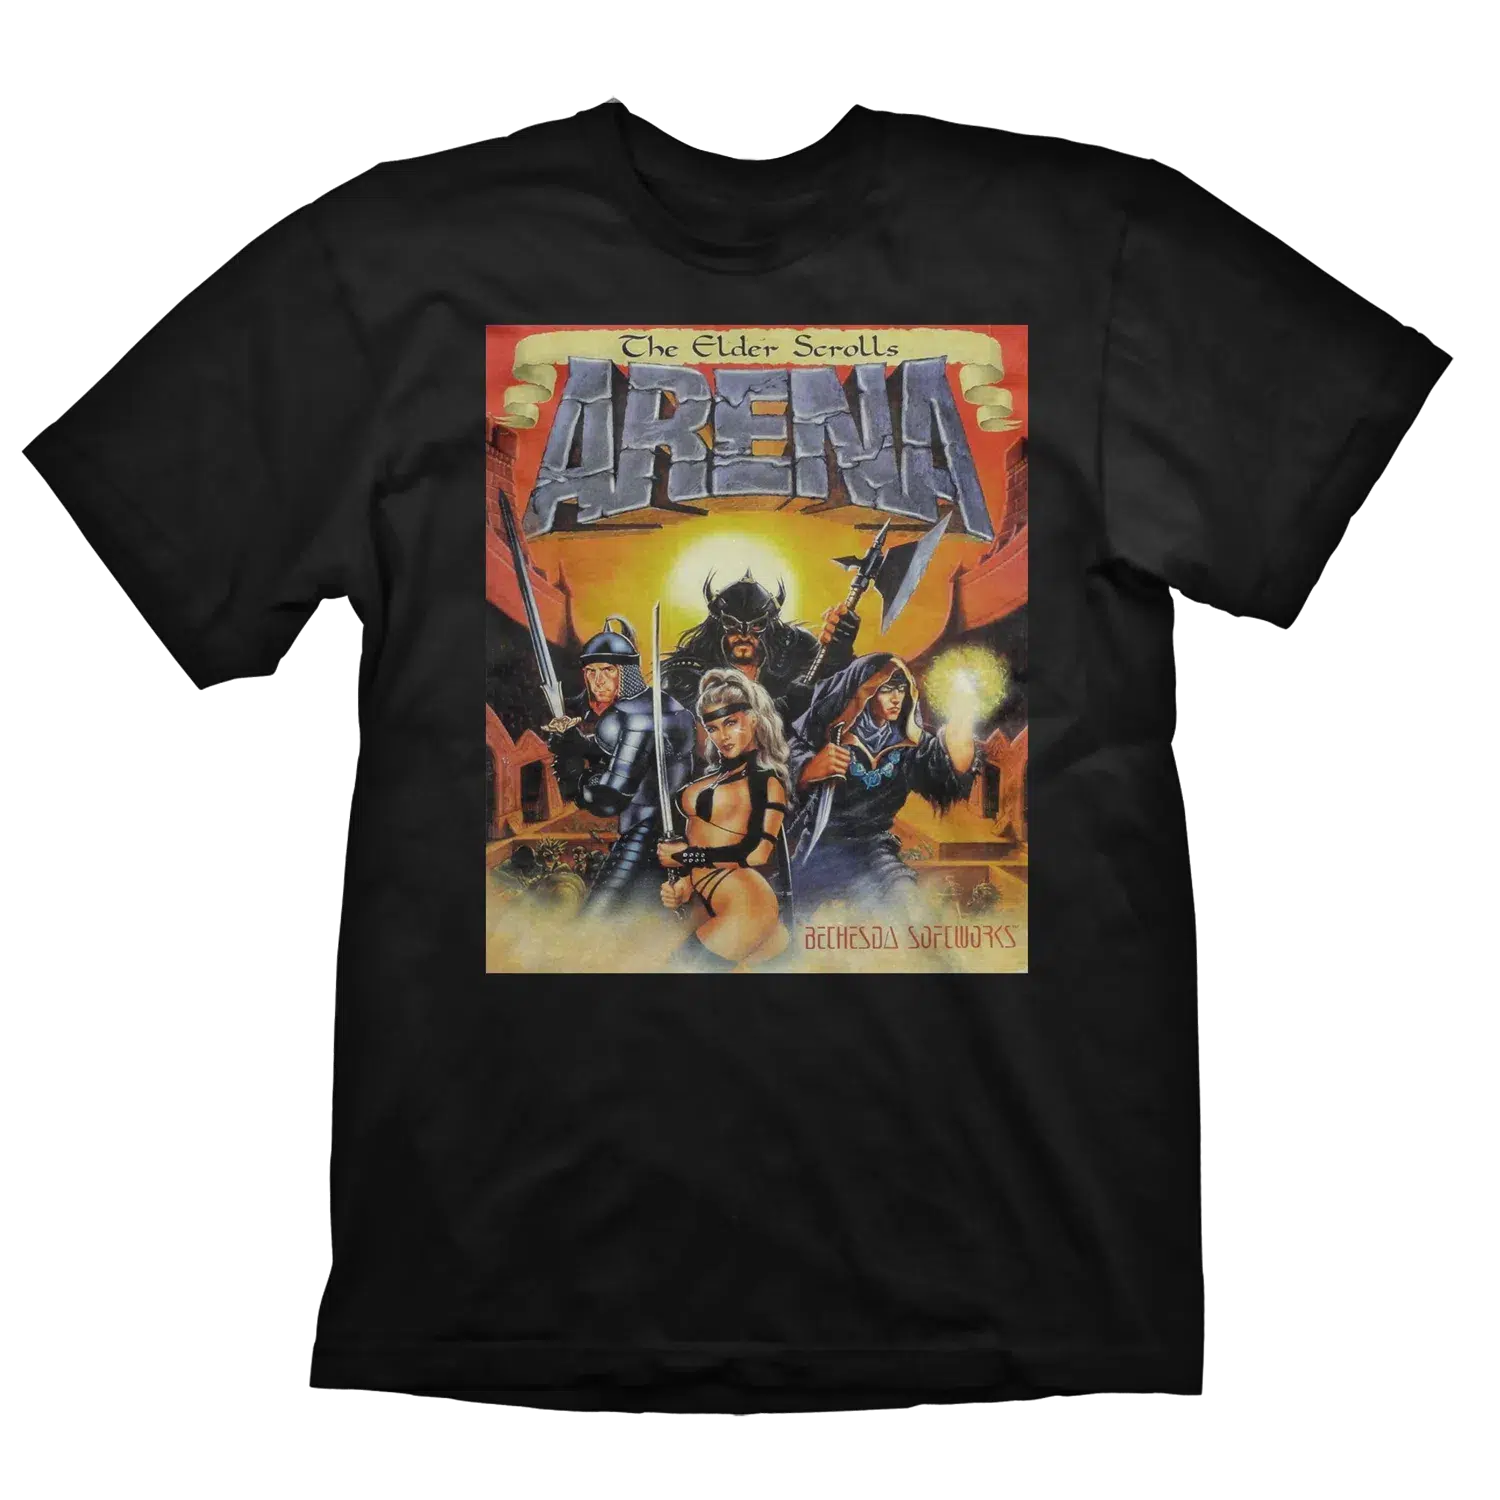 The Elder Scrolls T-Shirt Vintage Arena M Cover